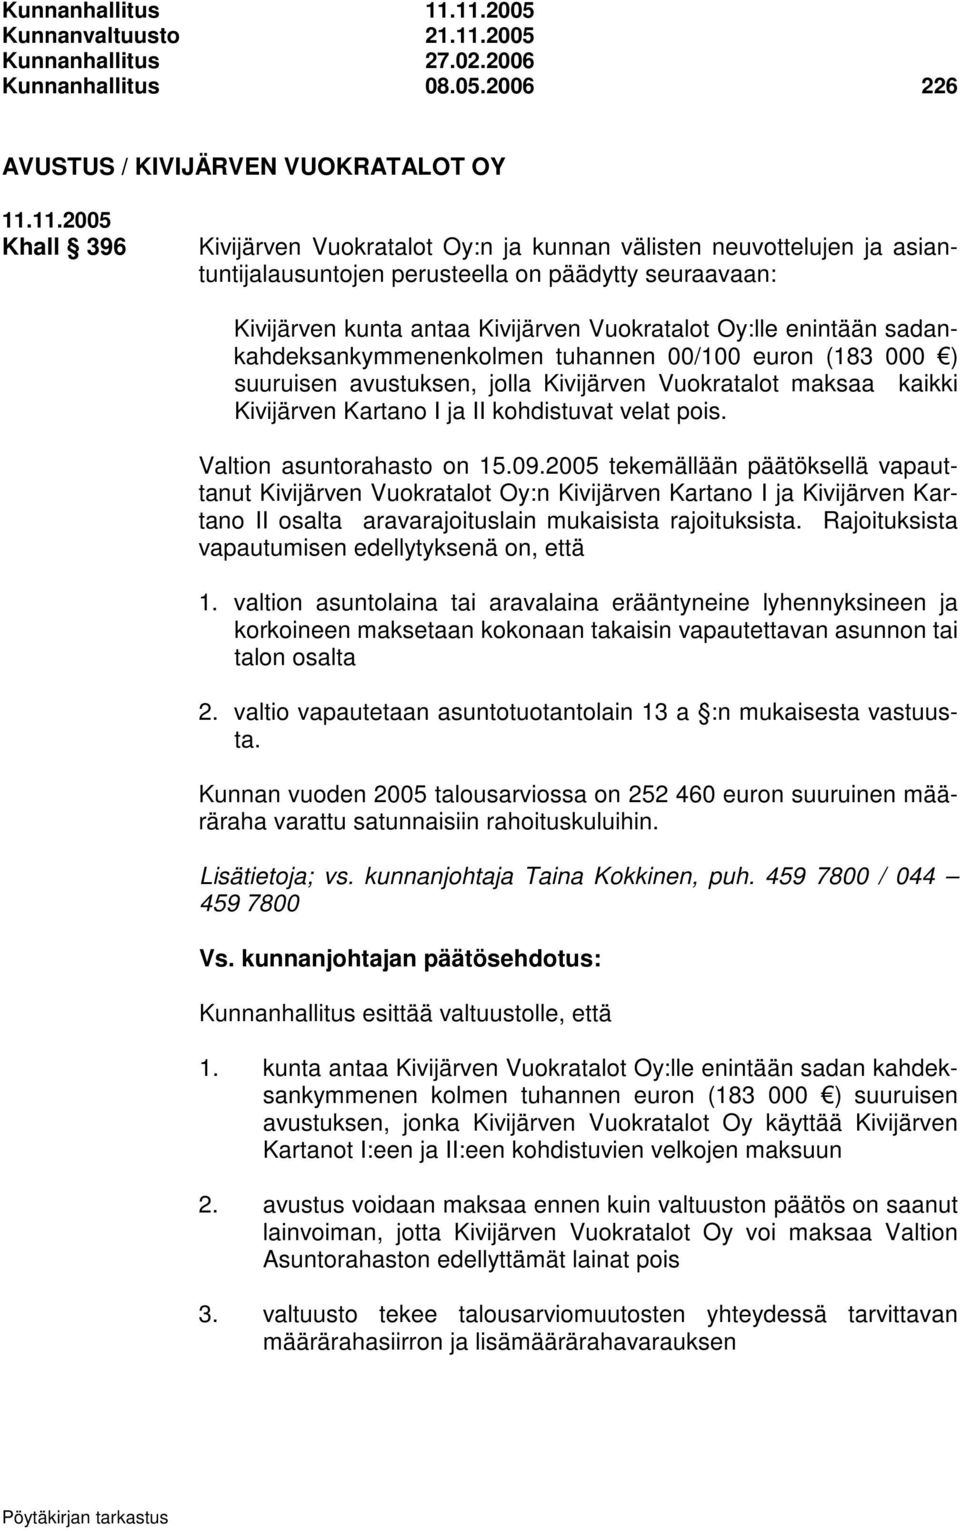 neuvottelujen ja asiantuntijalausuntojen perusteella on päädytty seuraavaan: Kivijärven kunta antaa Kivijärven Vuokratalot Oy:lle enintään sadankahdeksankymmenenkolmen tuhannen 00/100 euron (183 000